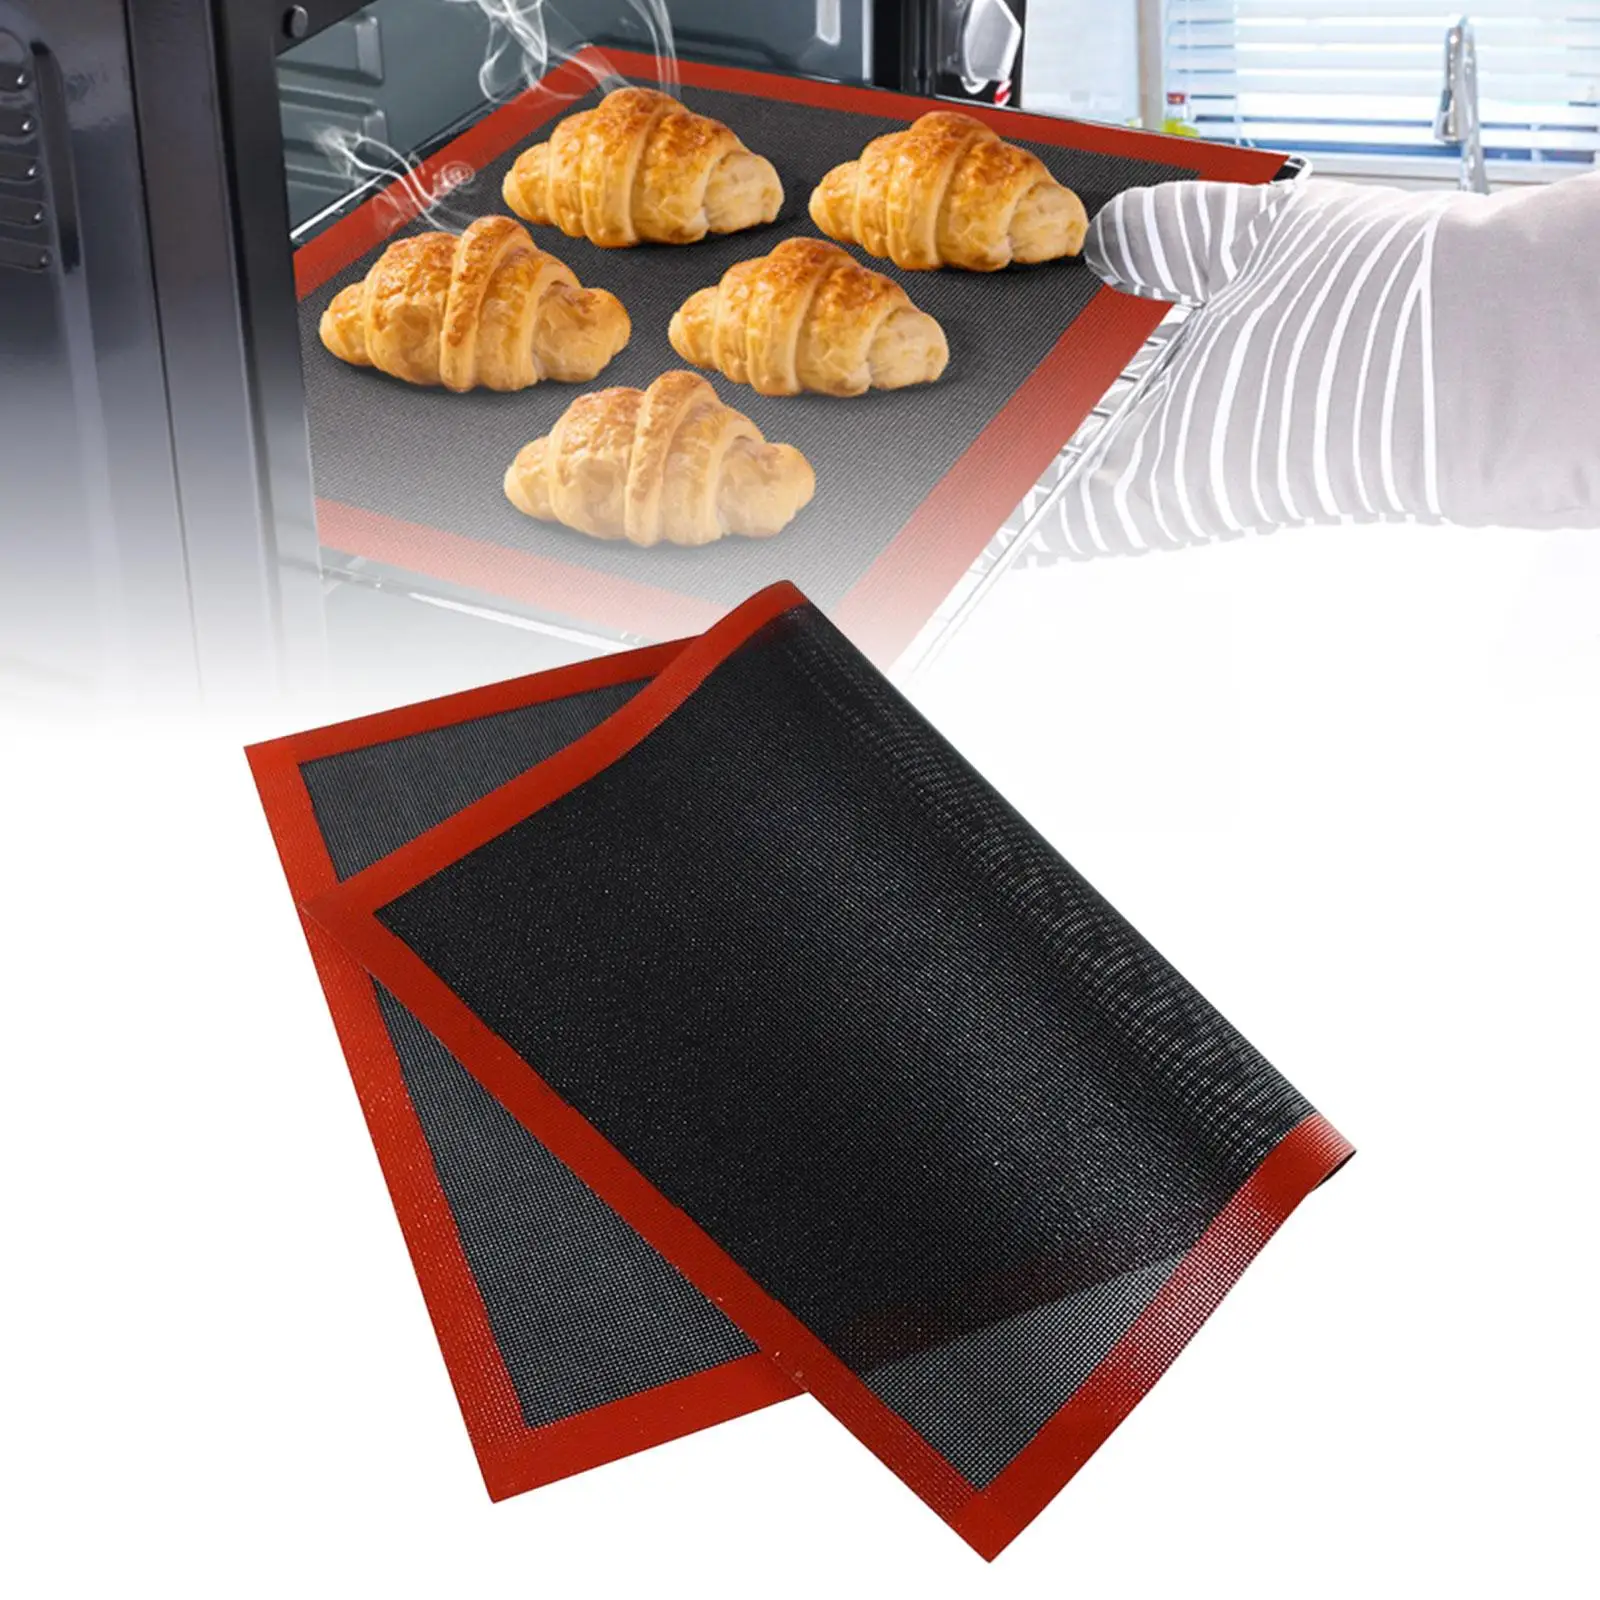 Baking Sheet Mat Breathable Oven Liner Baking Supplies Multifunction Cookie Mat Mat for Home Restaurantchen Tool